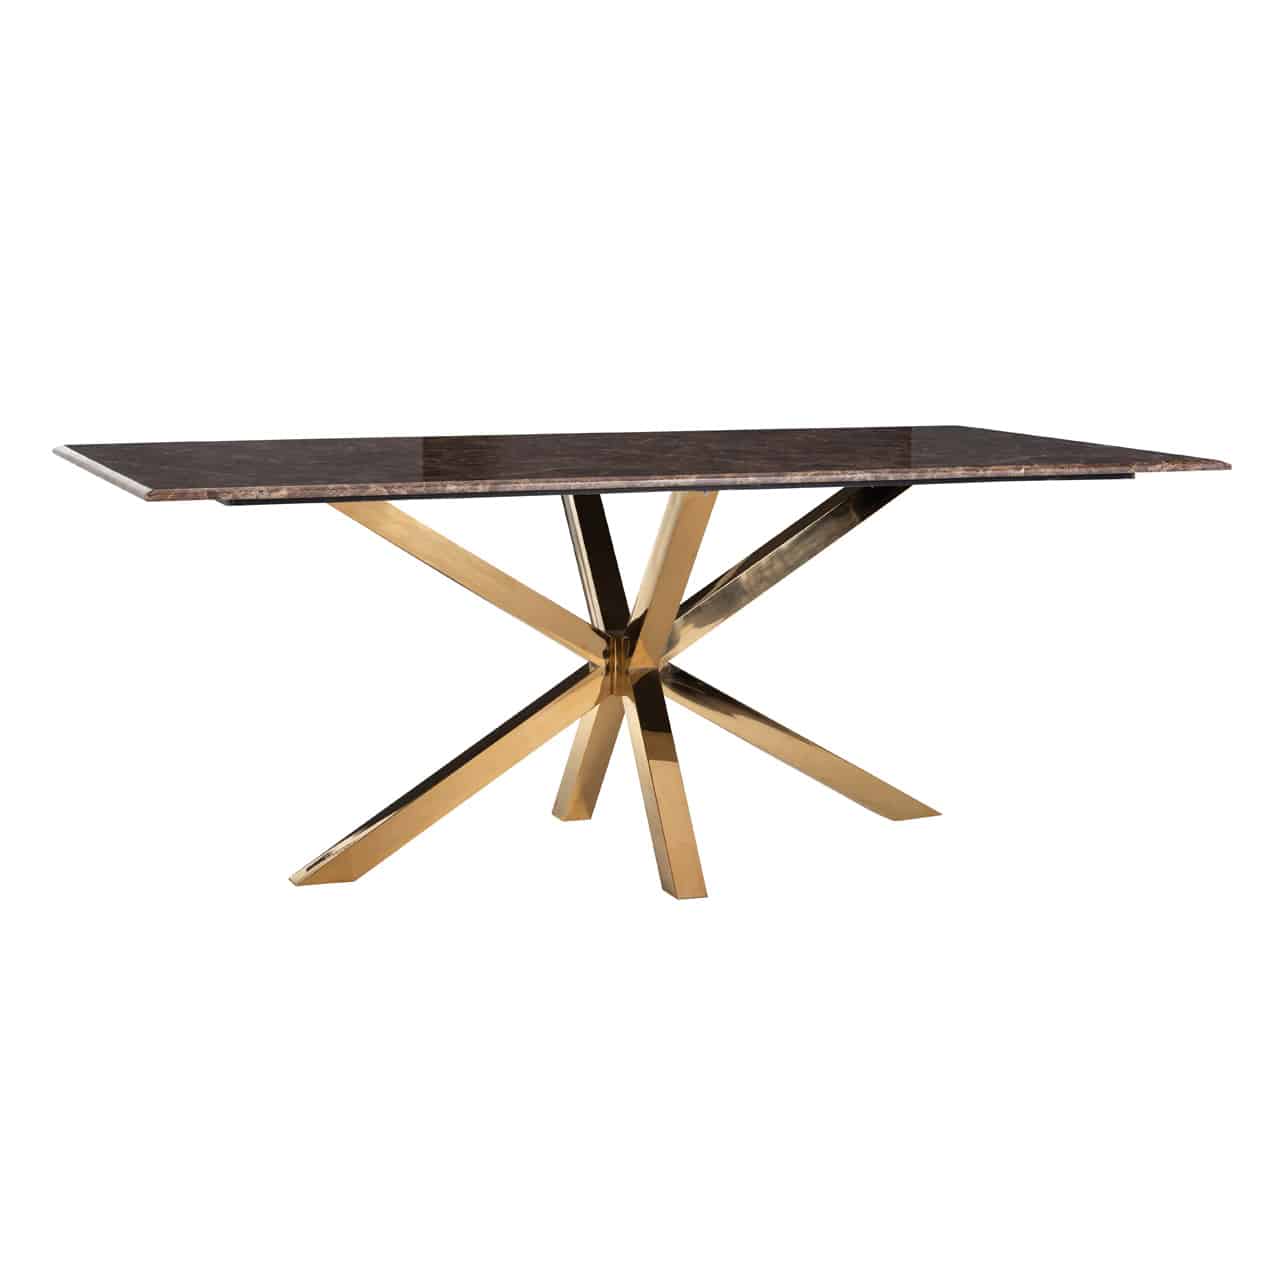 Esstisch mit einem Edelstahl Gestell aus sternförmig angeordneten goldenen Planken; darauf eine quadratische, braun marmorierte Tischplatte.